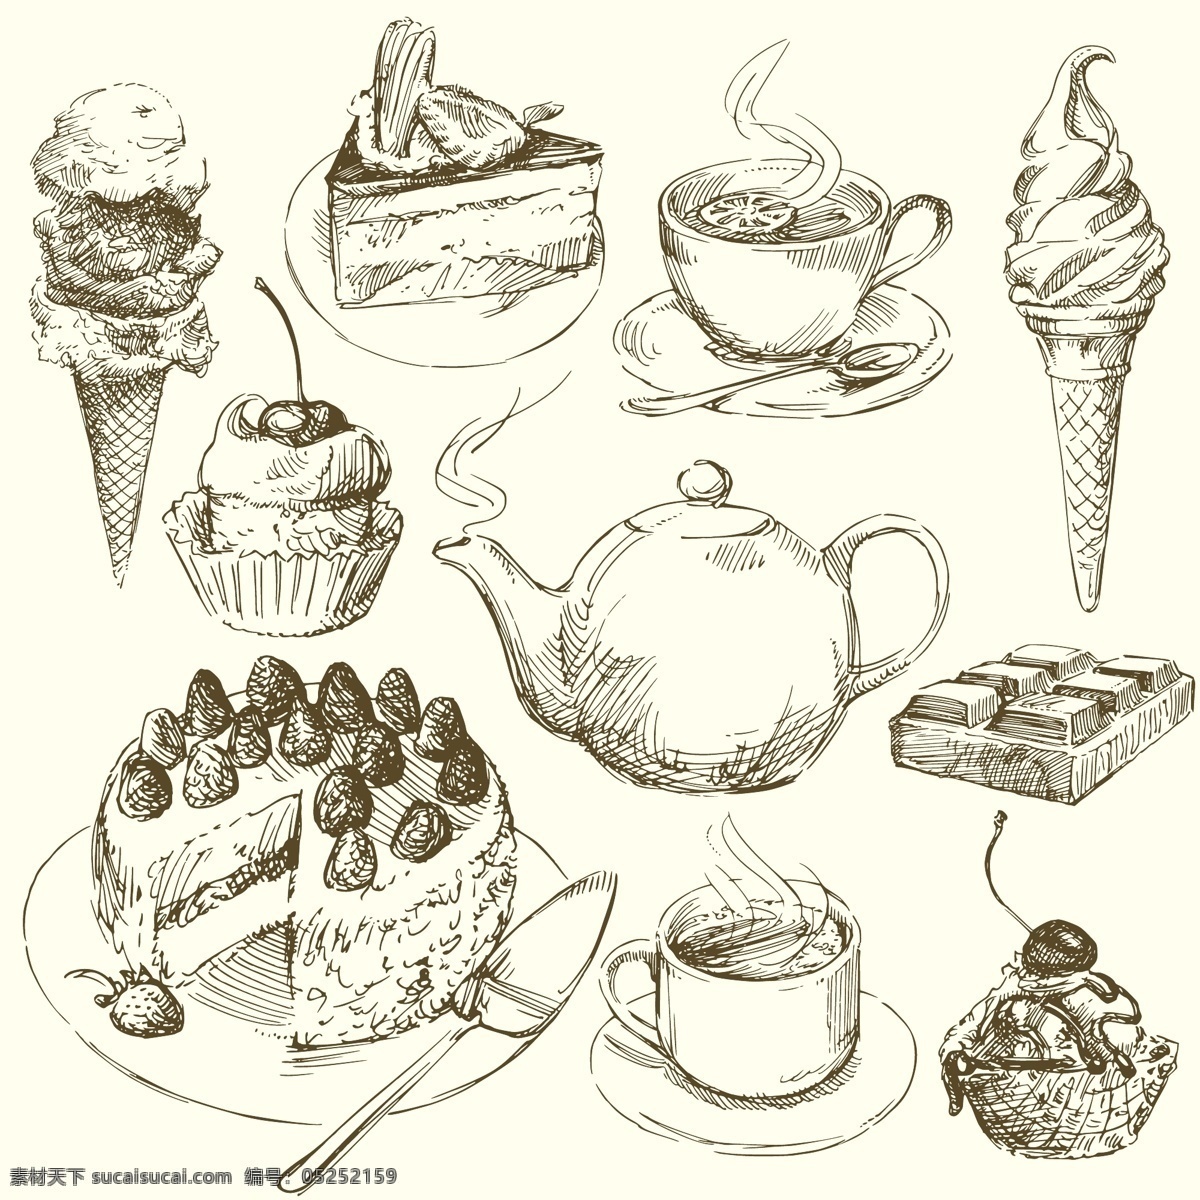 手绘食物 手绘 线稿 插画 速写 素描 食物 蛋糕 咖啡 冰激淋 巧克力 奶酪 矢量素材 餐饮美食 生活百科 矢量